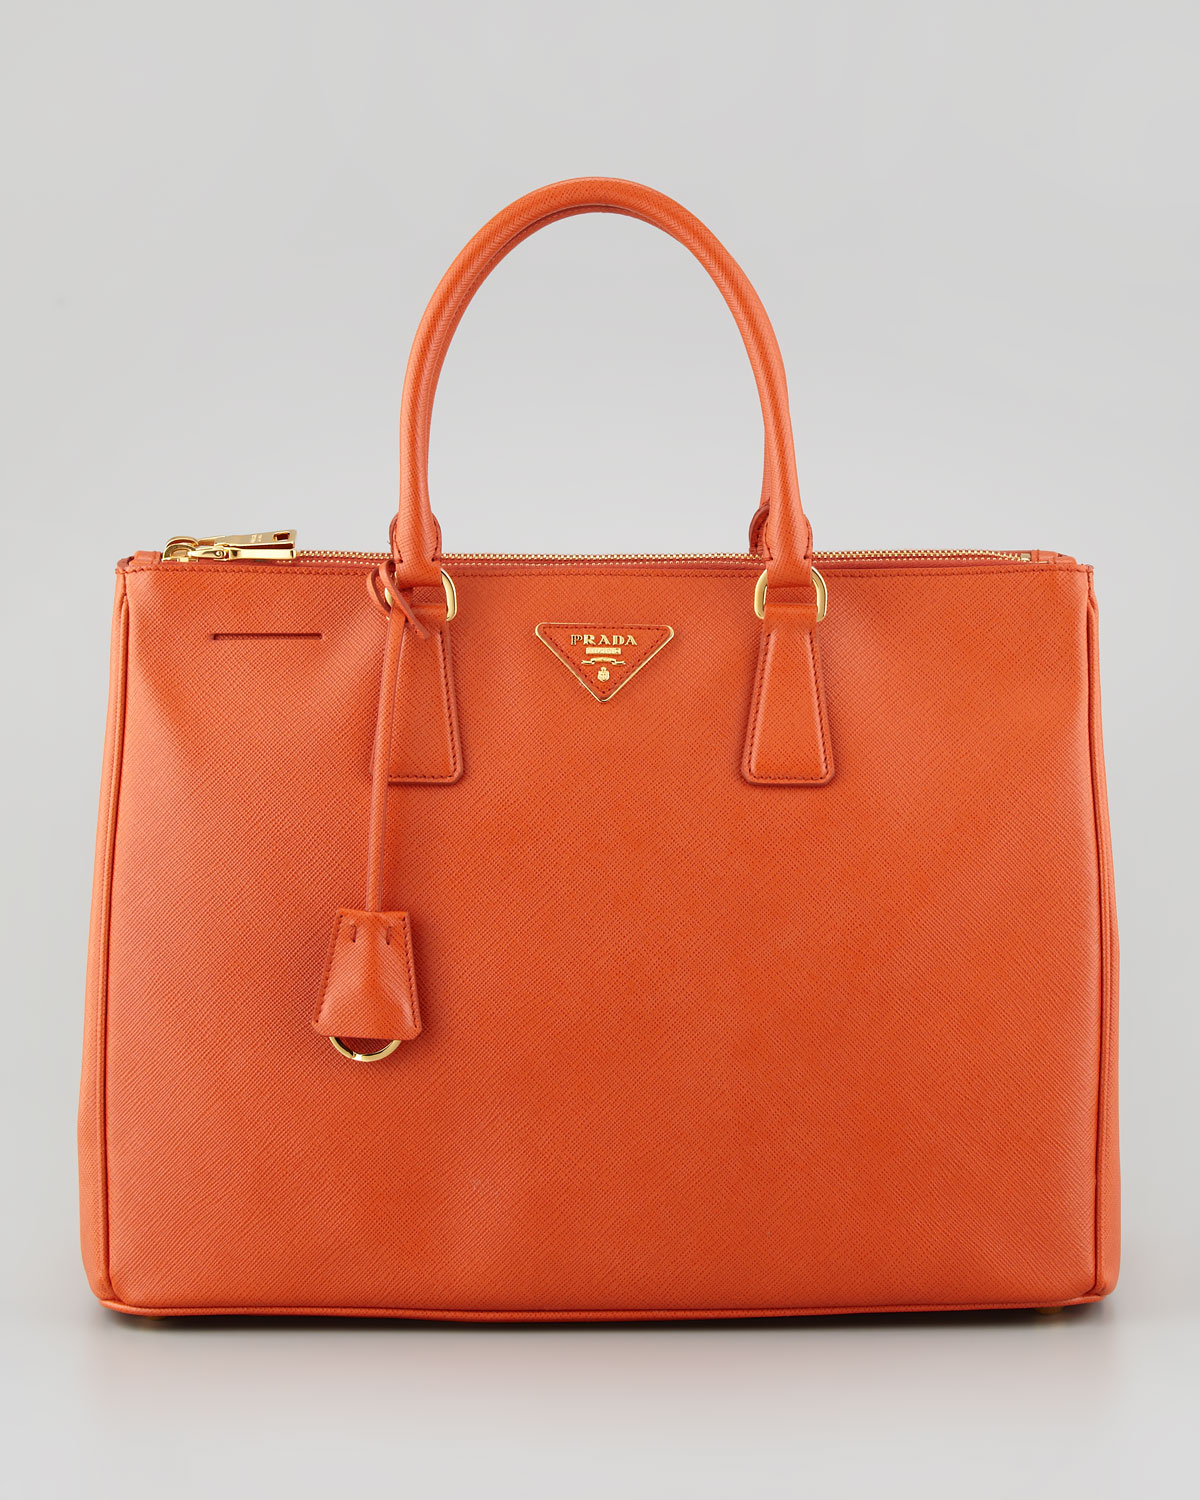 Lyst - Prada Saffiano Lux Medium Executive Tote Bag in Orange